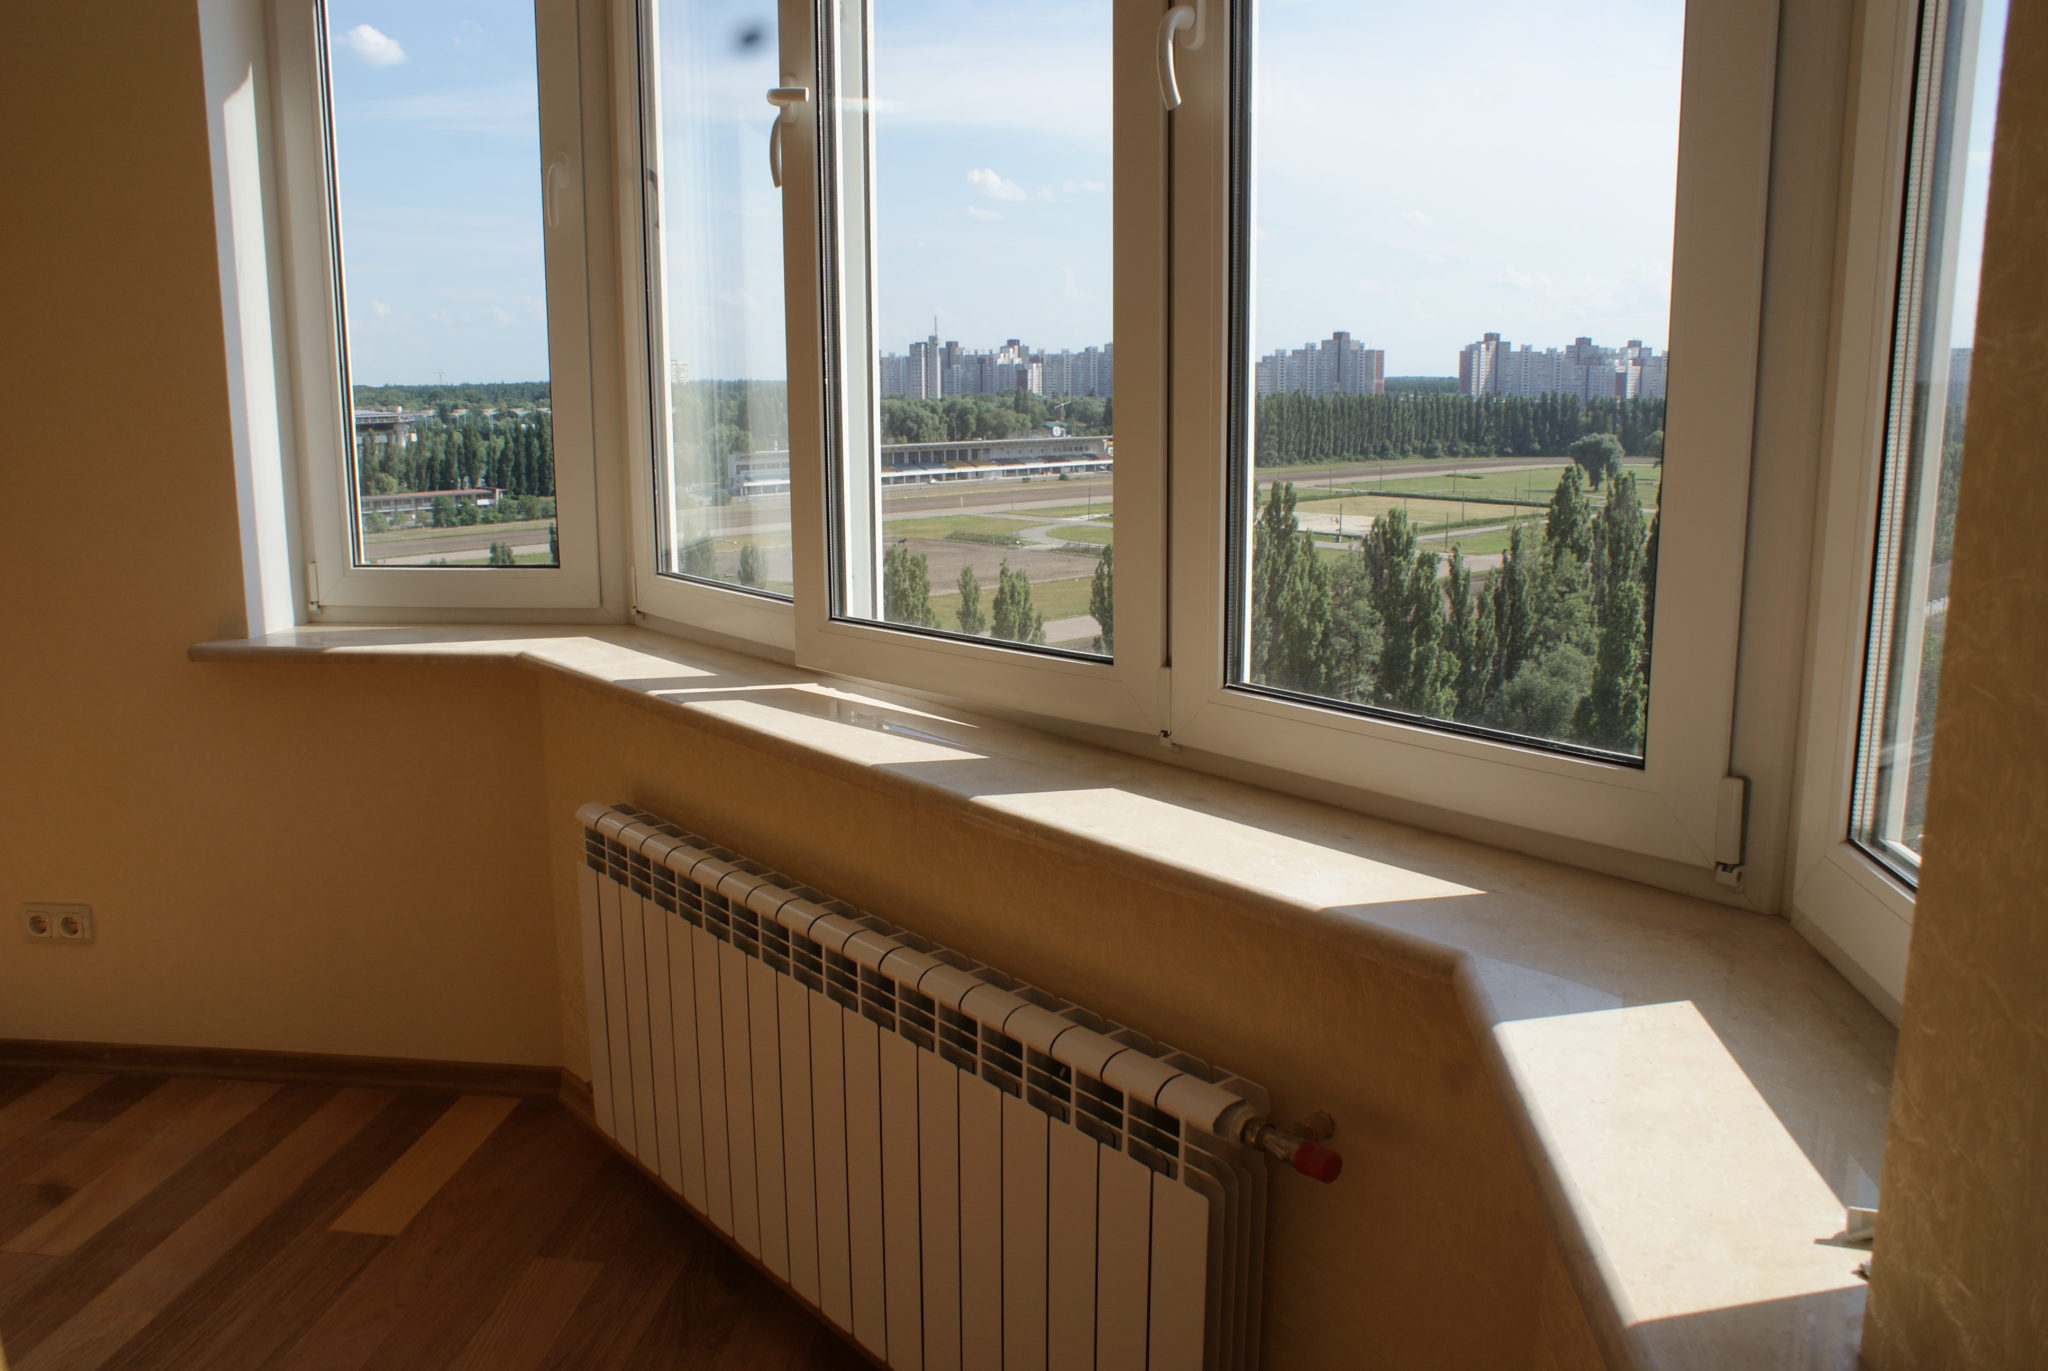 Купить окна в севастополе. Окна ПВХ на балкон. Берлинское окно. Раздвижные створки в деревянной раме балкон. Окна Севастополь.